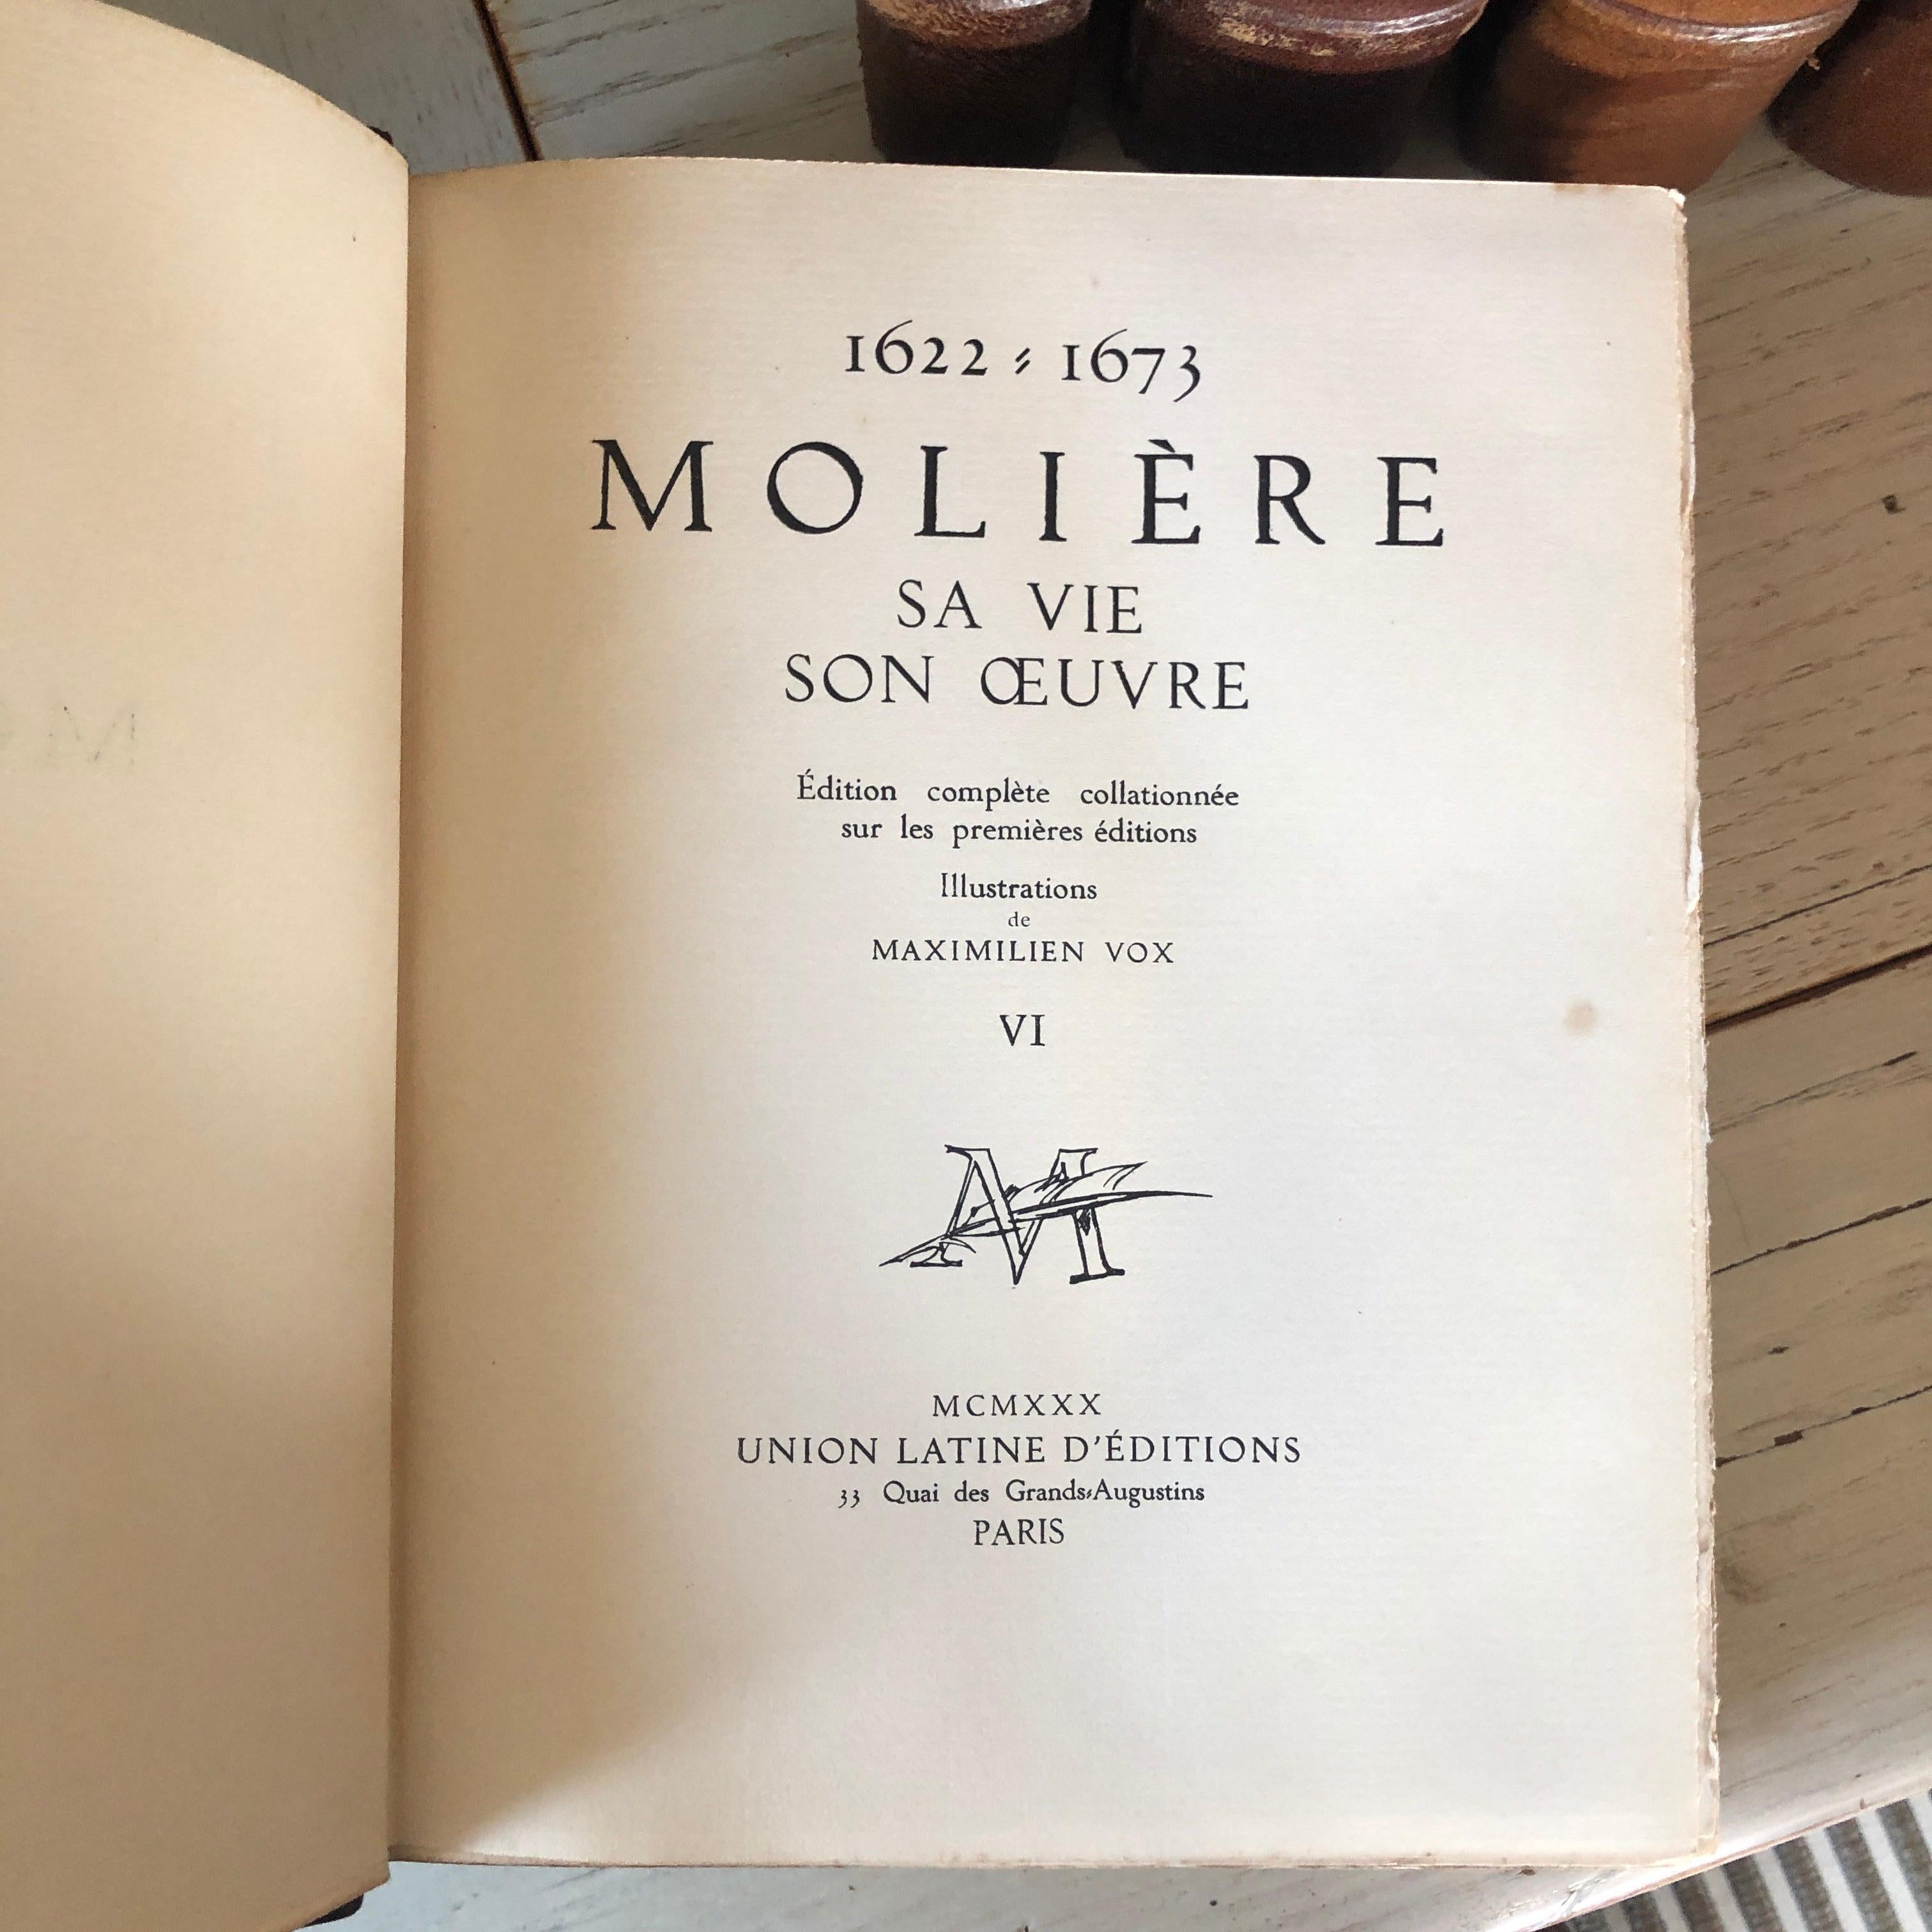 Paper Original Six Volumes by Molière 